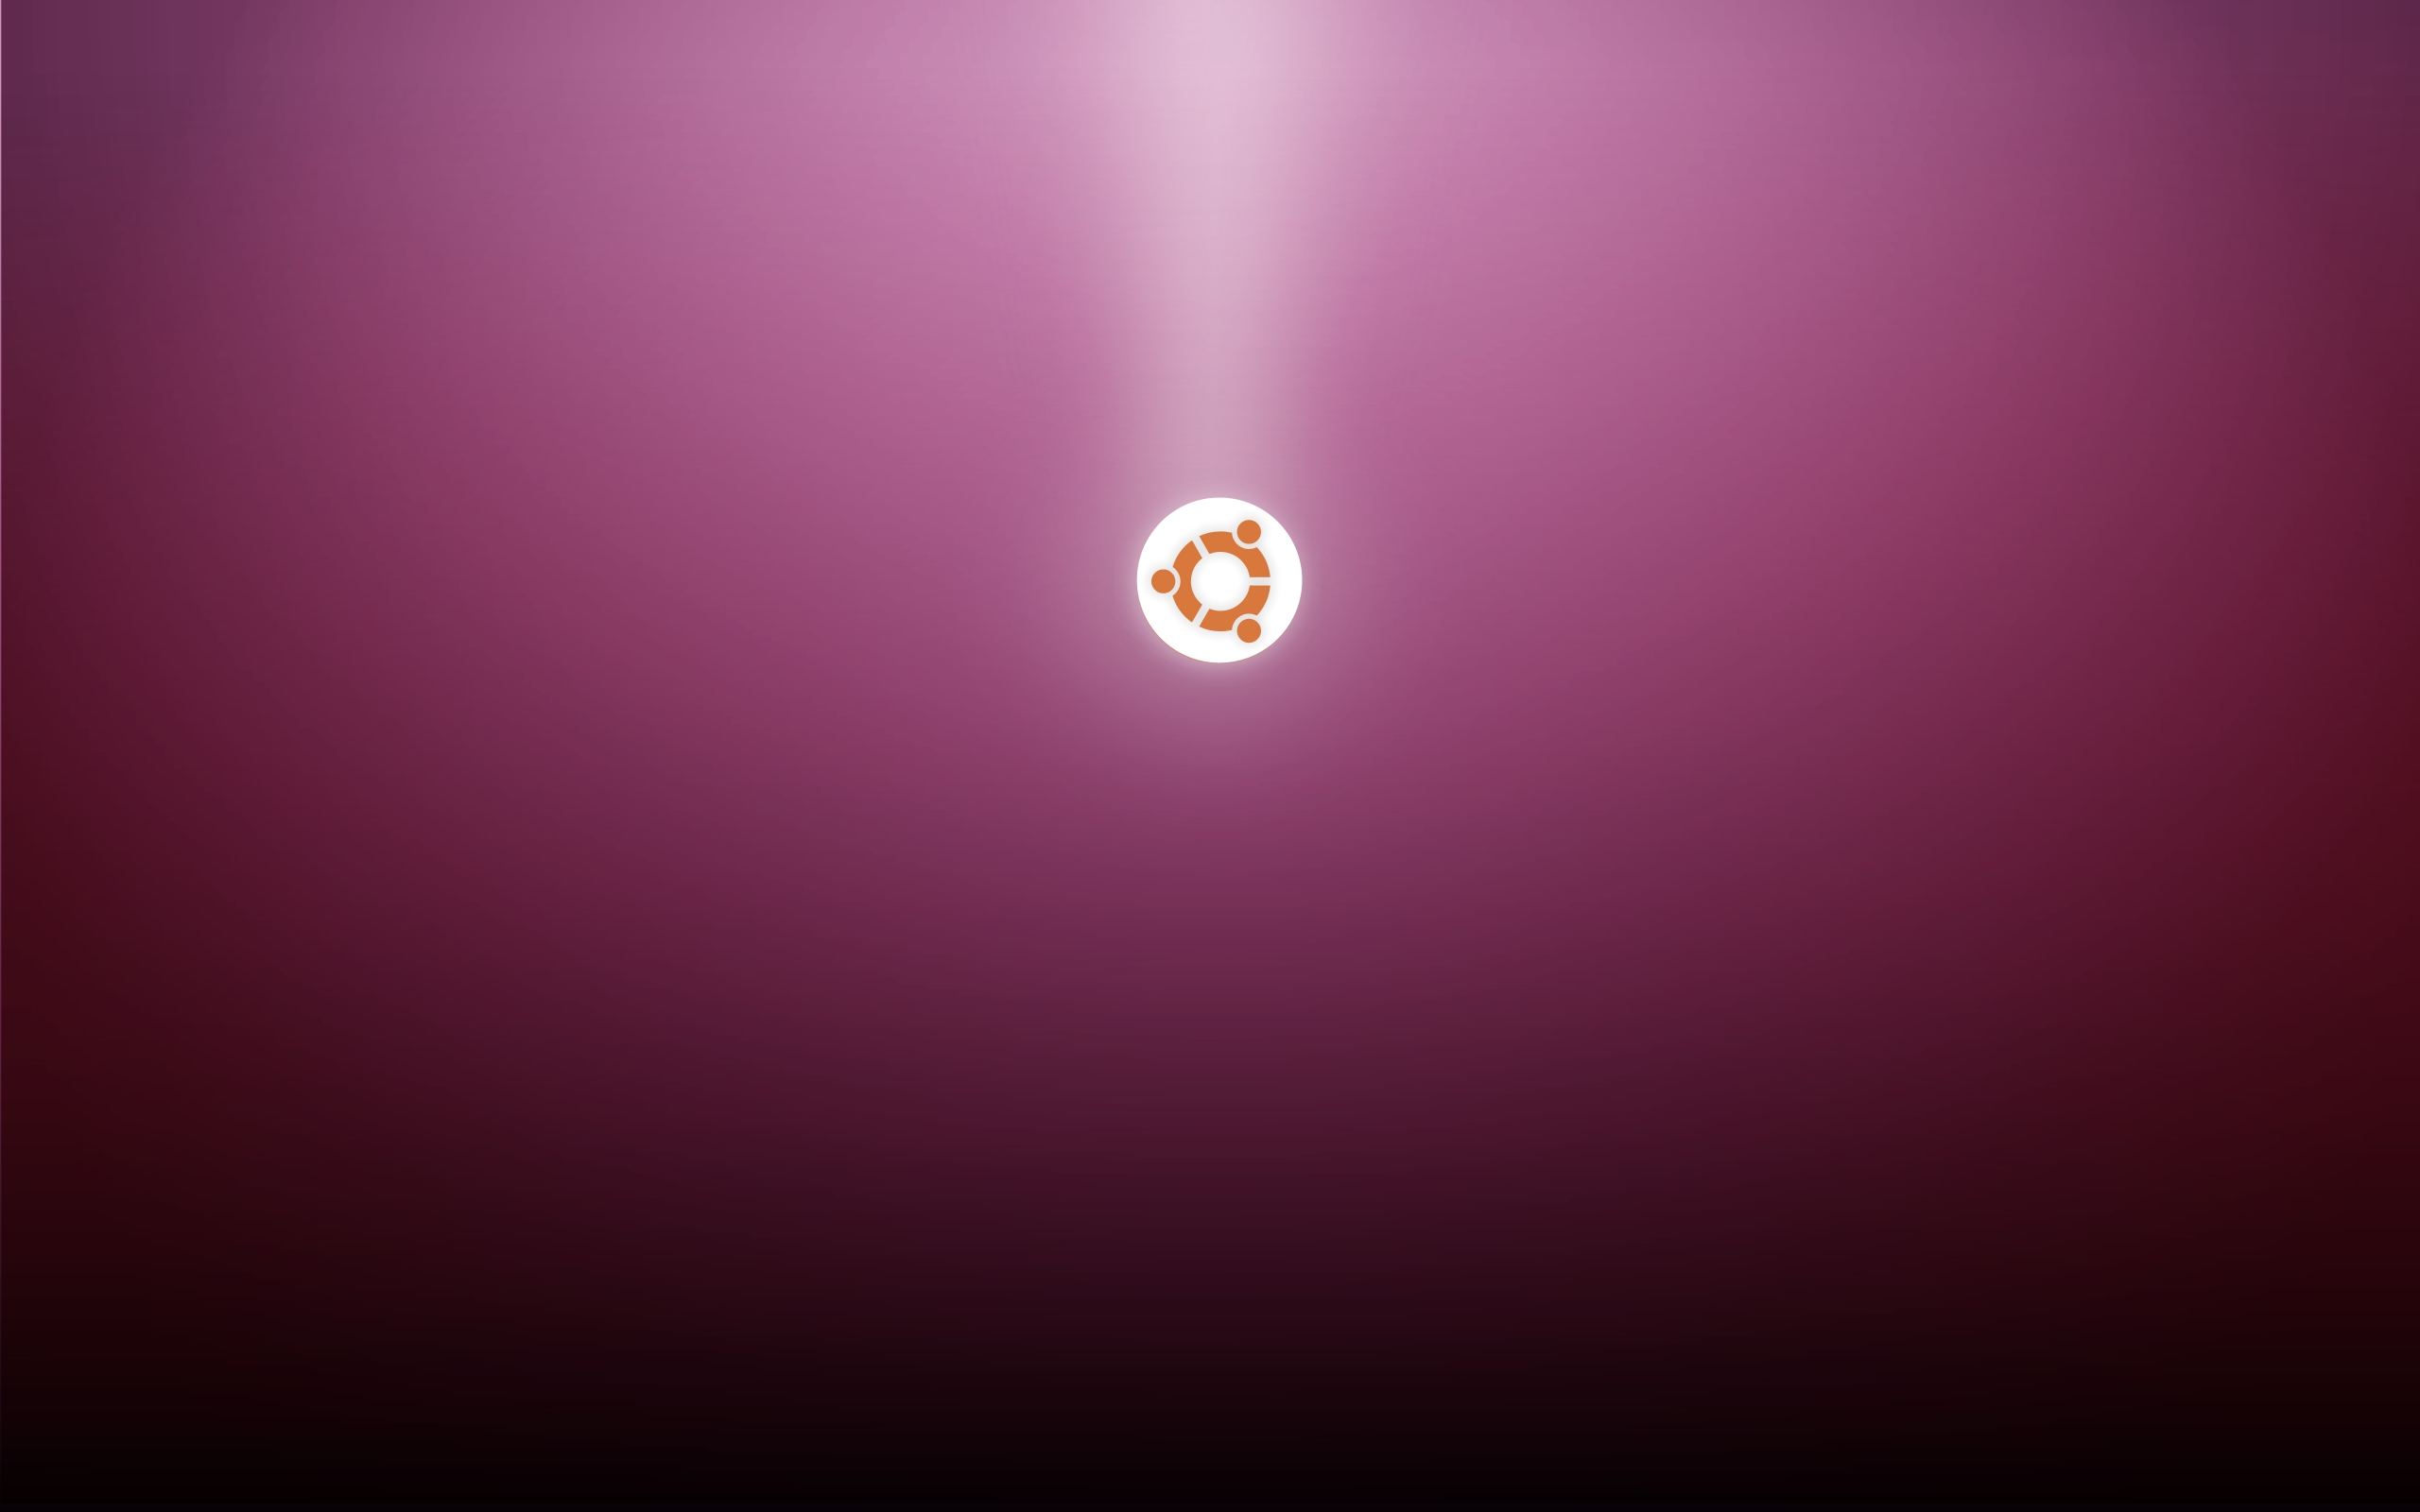 Wallpaper Ubuntu